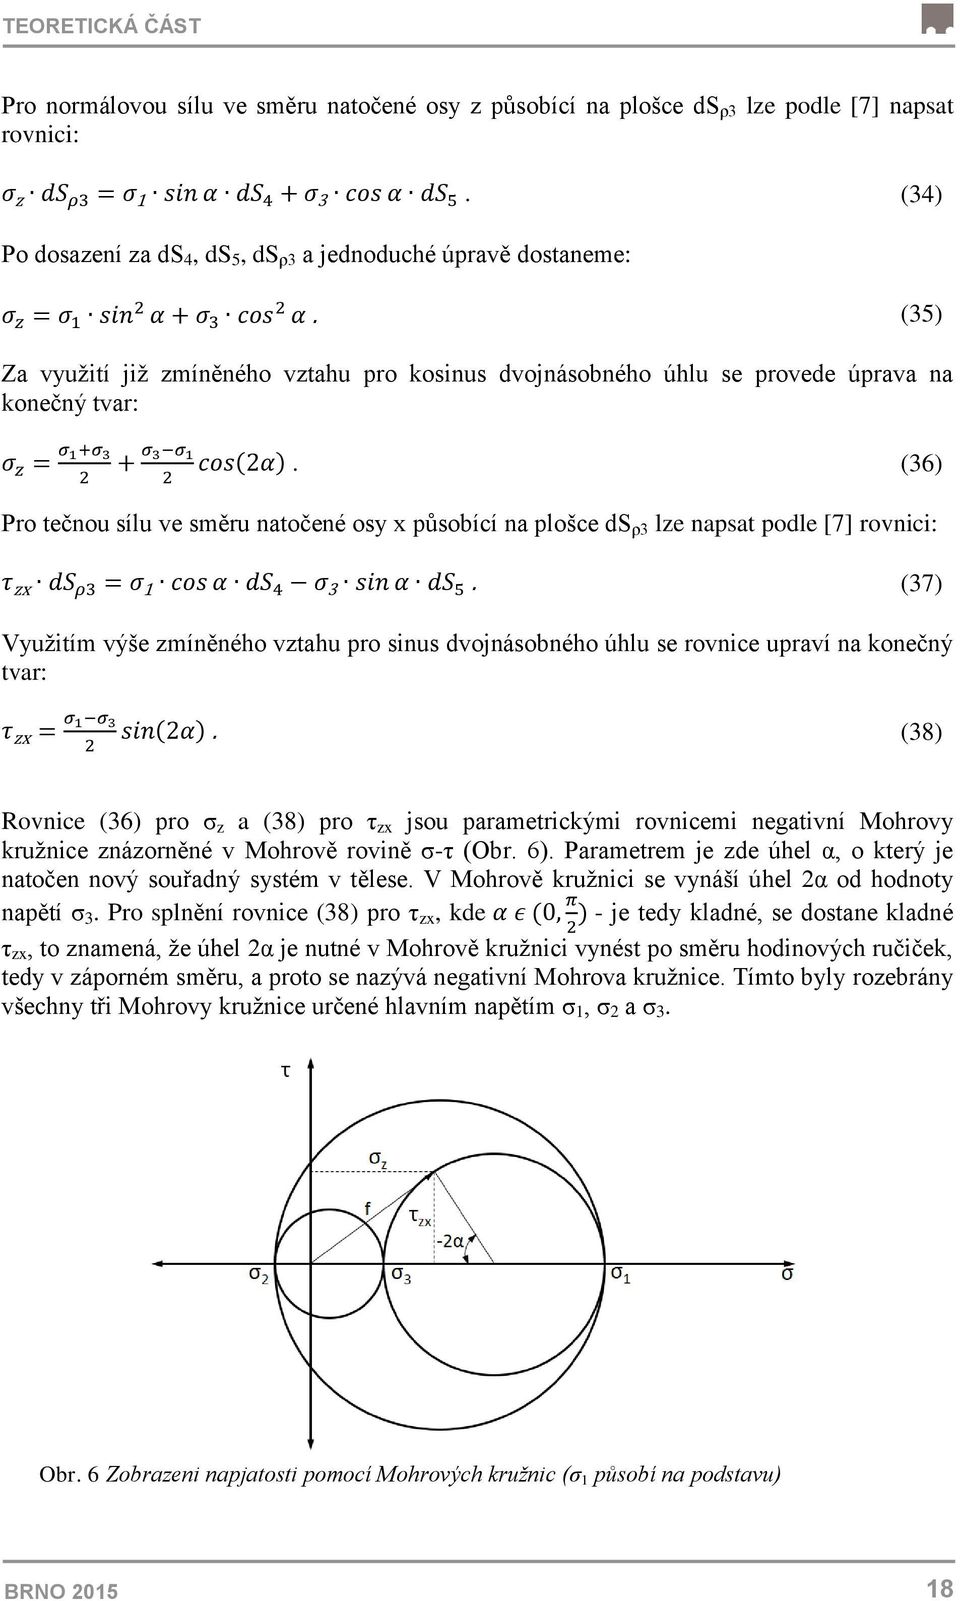 (35) Za využití již zmíněného vztahu pro kosinus dvojnásobného úhlu se provede úprava na konečný tvar: σ z = σ 1+σ 3 2 + σ 3 σ 1 cos(2α).